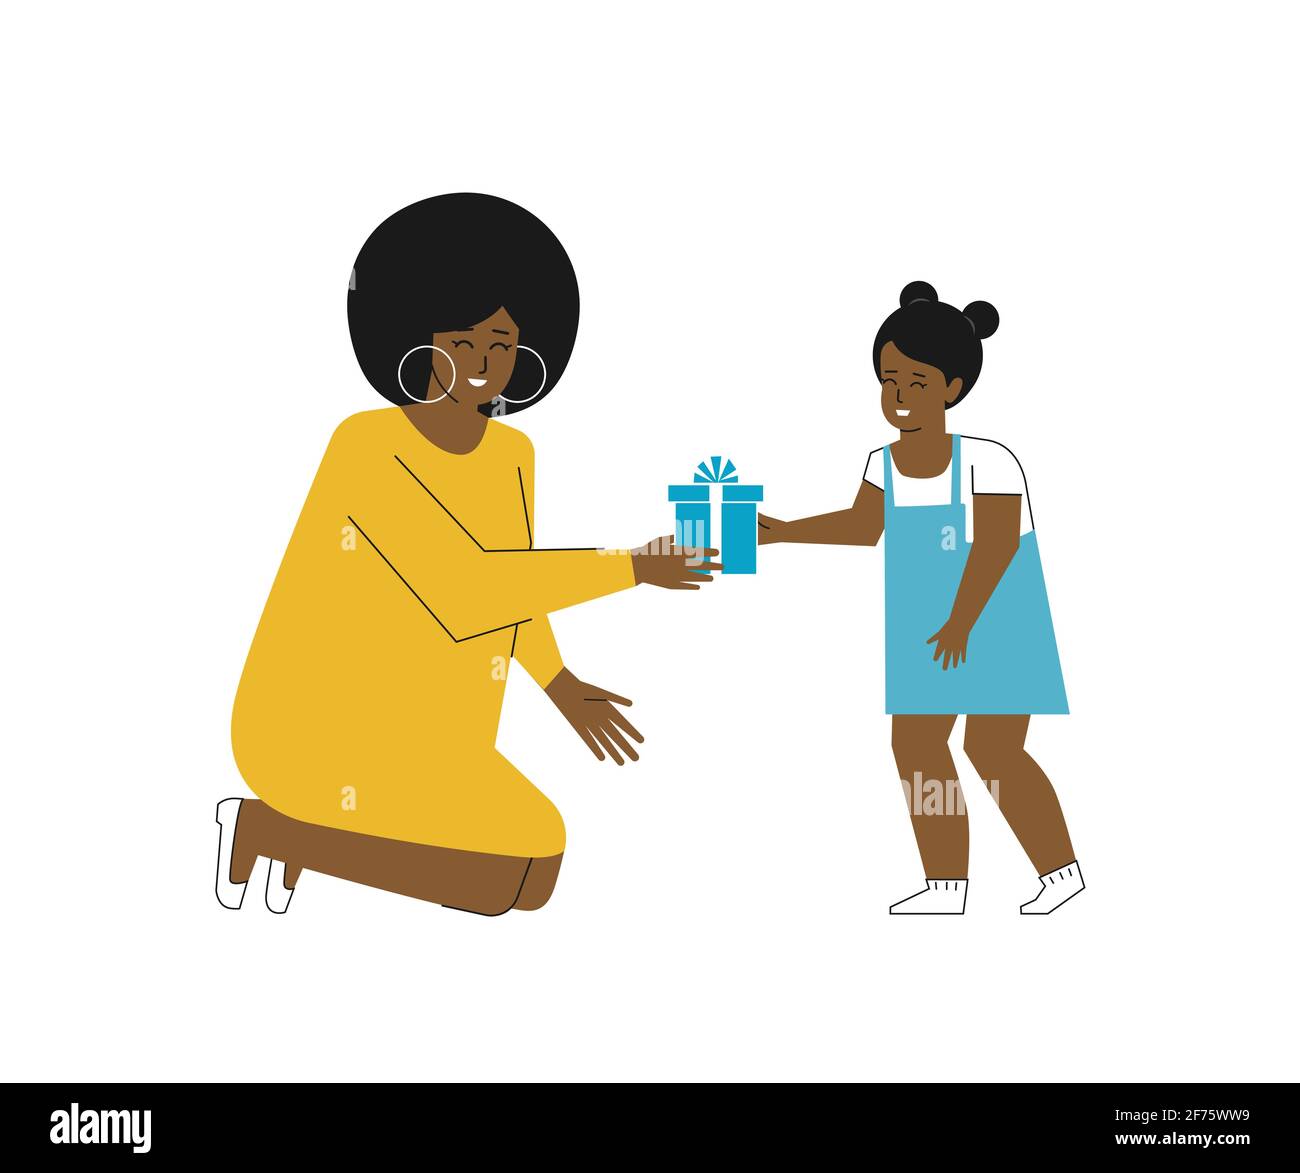 Buon Compleanno Mamma, Un Bel Design Della Cartolina Di Auguri  Illustrazione Vettoriale EPS 10 Illustrazione Vettoriale - Illustrazione di  infanzia, celebrazione: 164016302